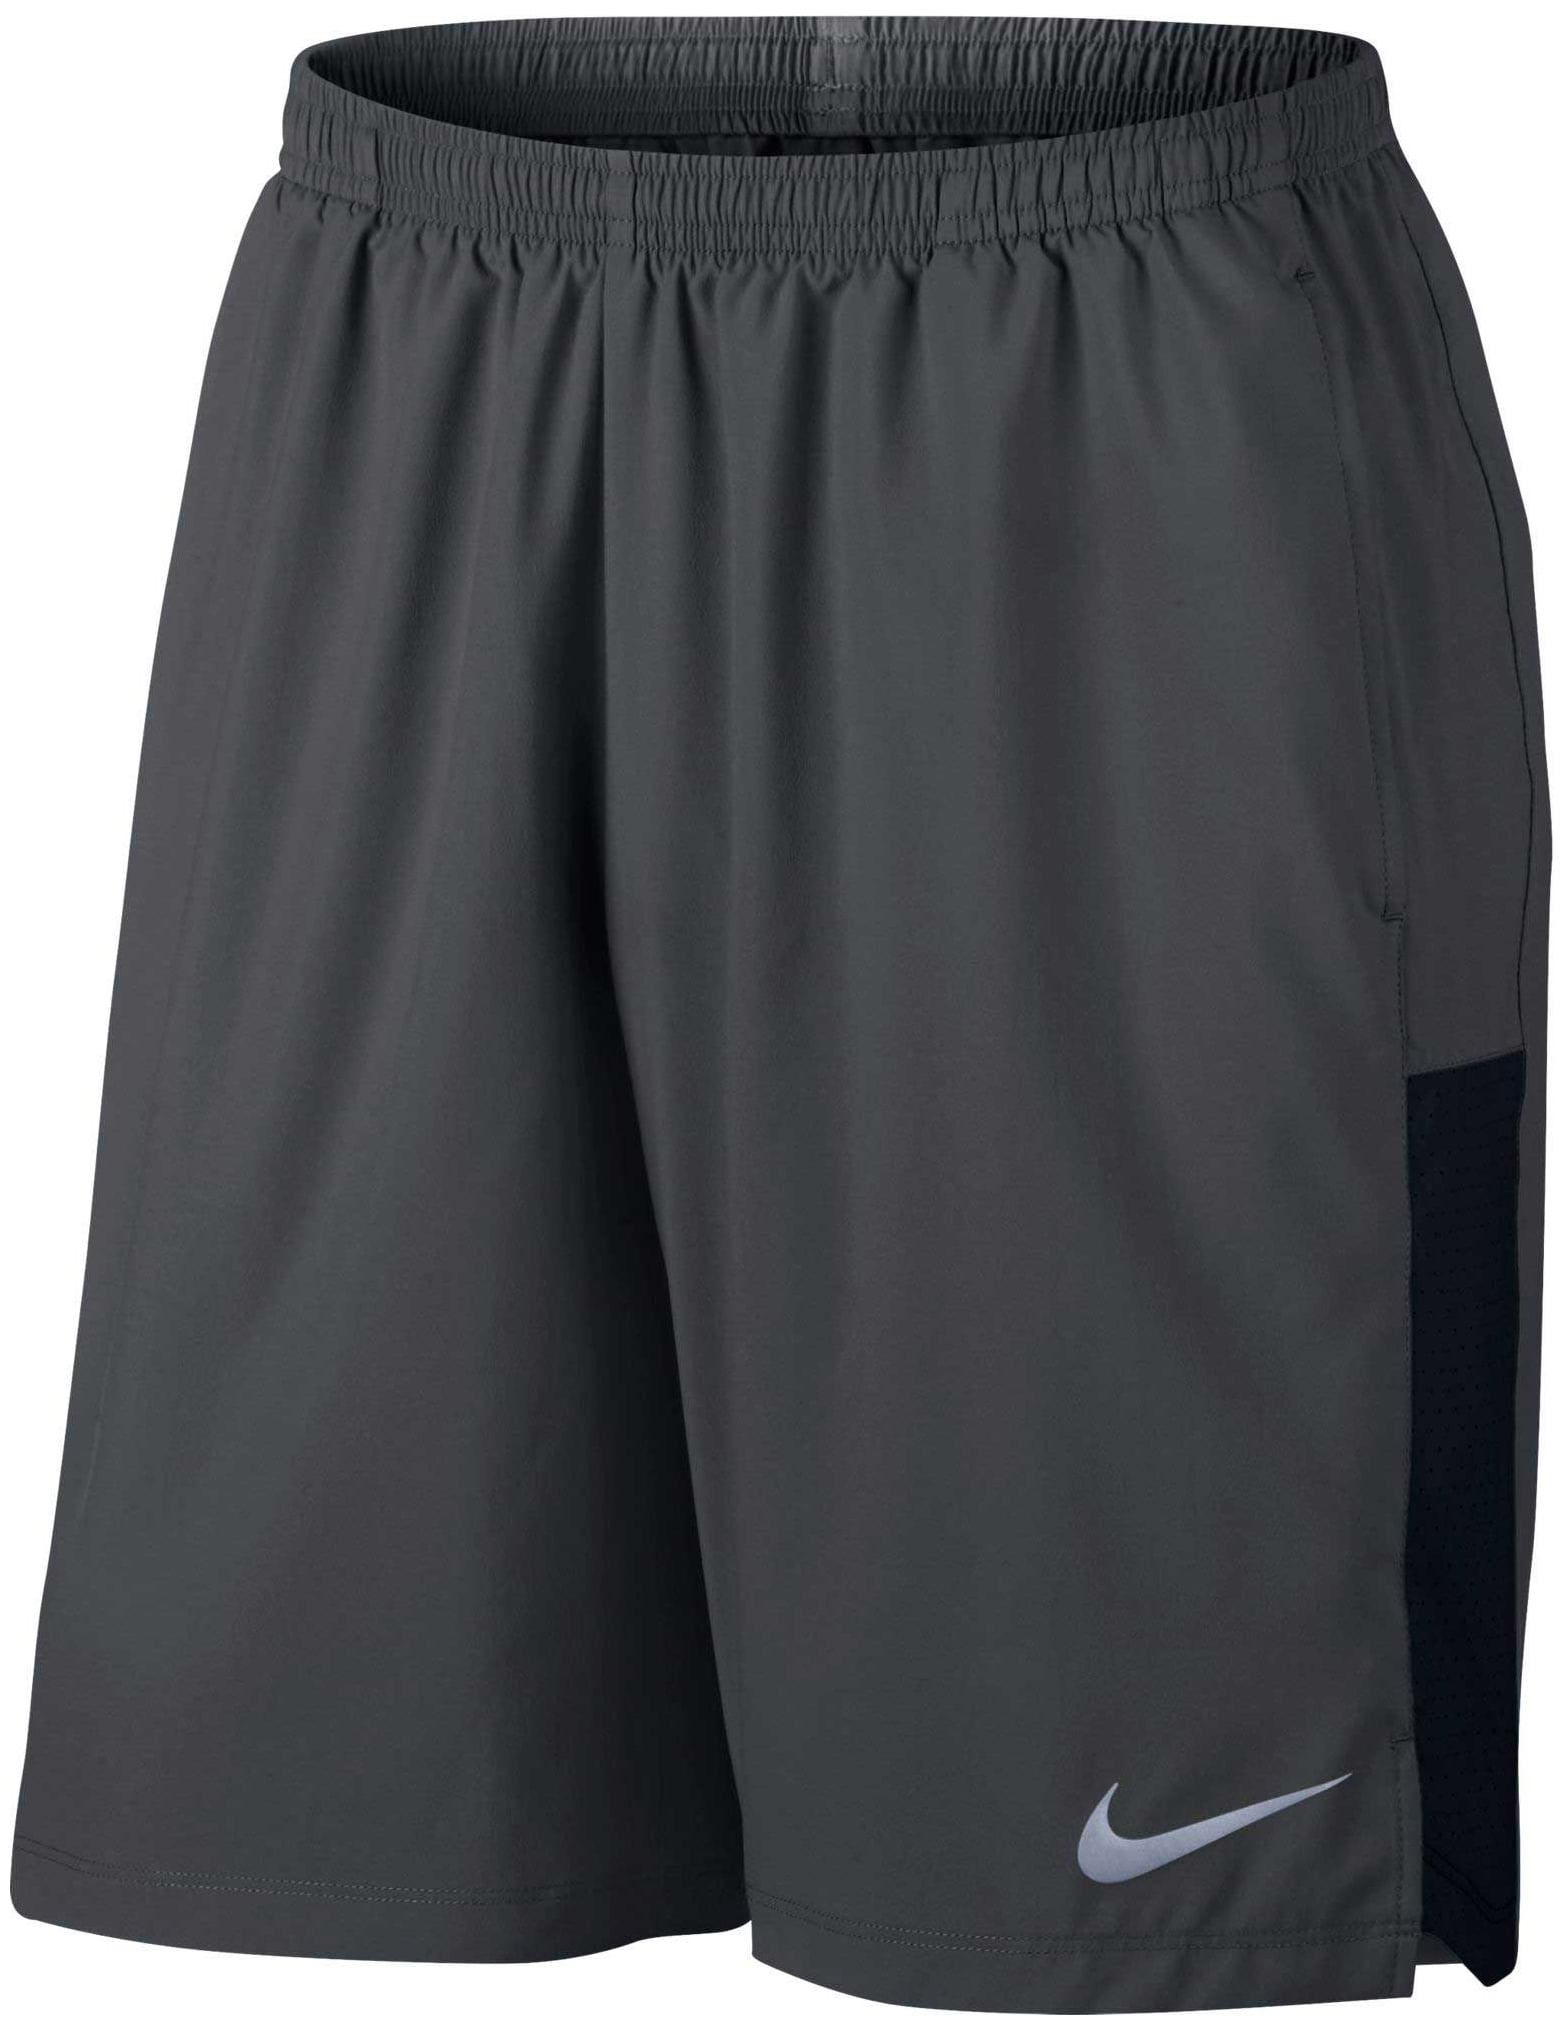 Nike Men's 9'' Flex Challenger Running Shorts Anthracite/Black - Size XL - Walmart.com